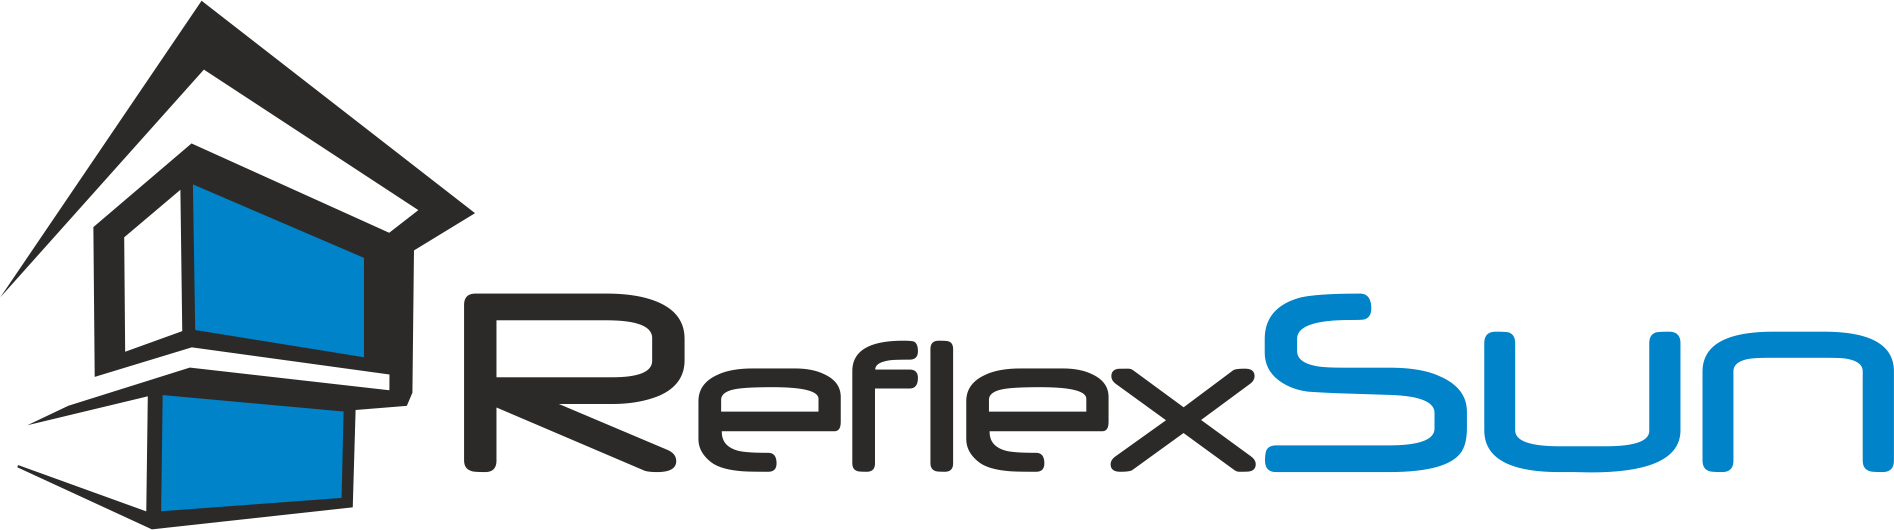 ReflexSun - EN